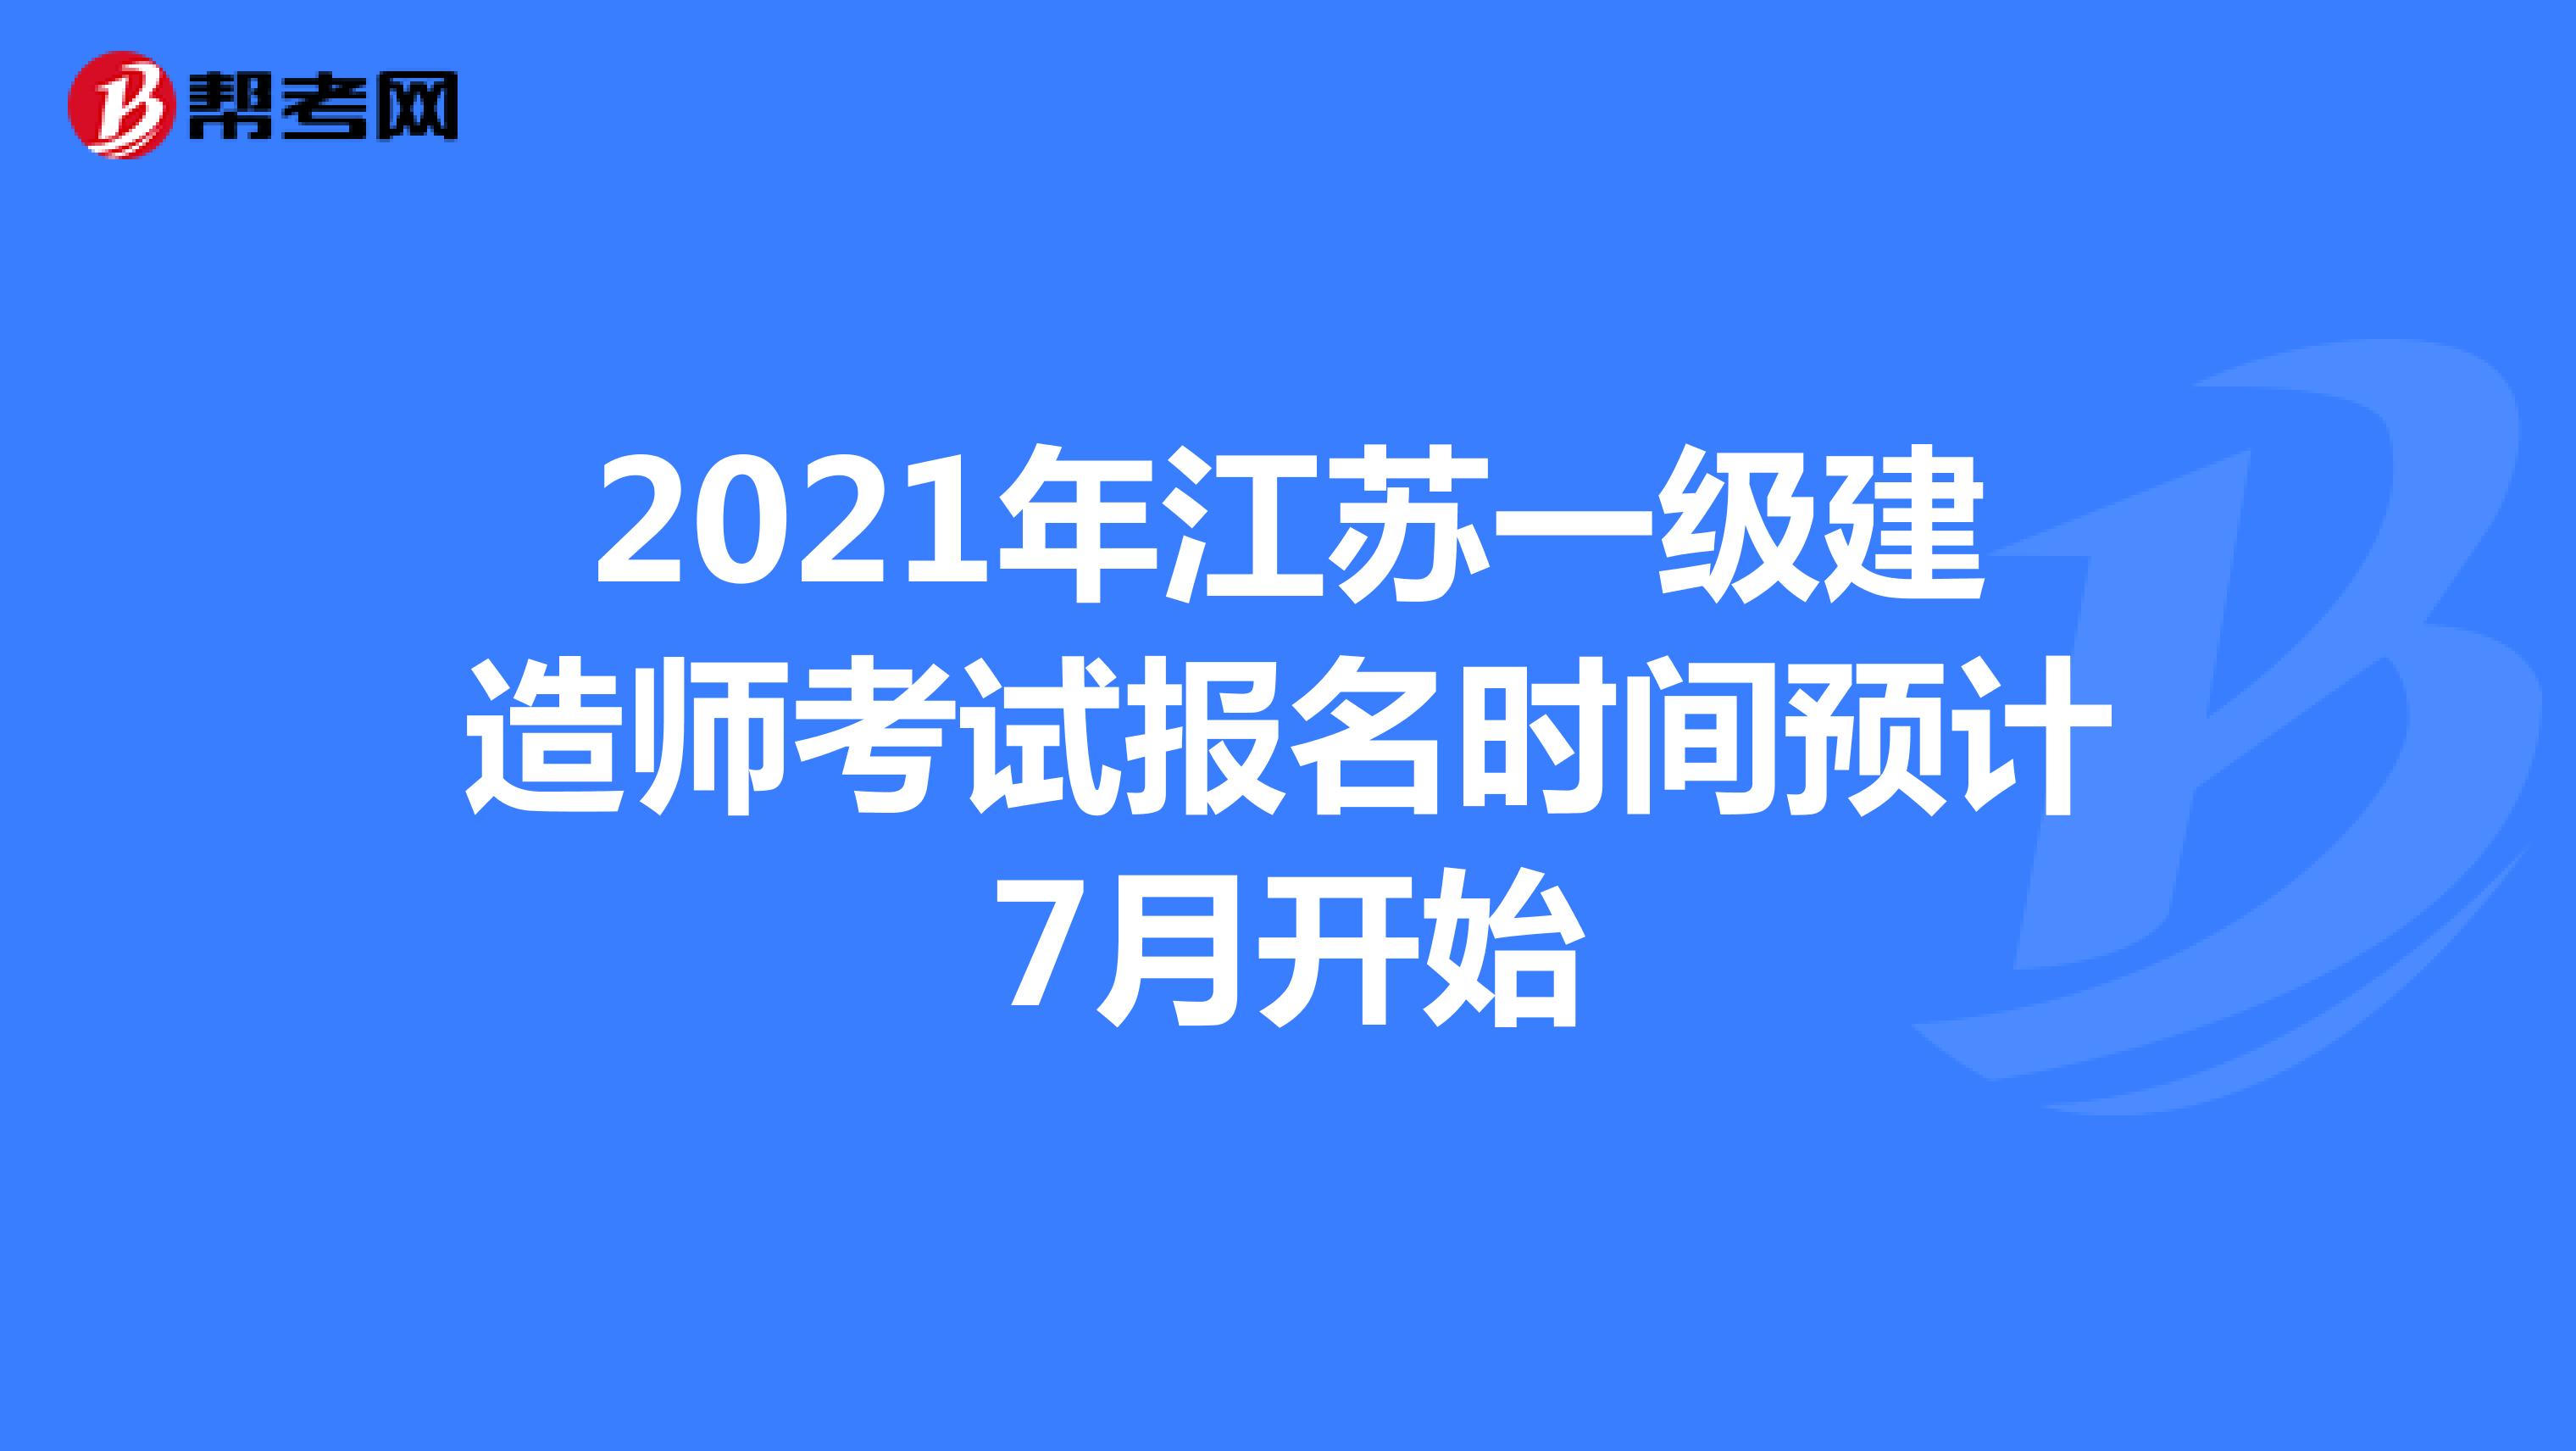 2021年江苏一级建造师考试报名时间预计7月开始